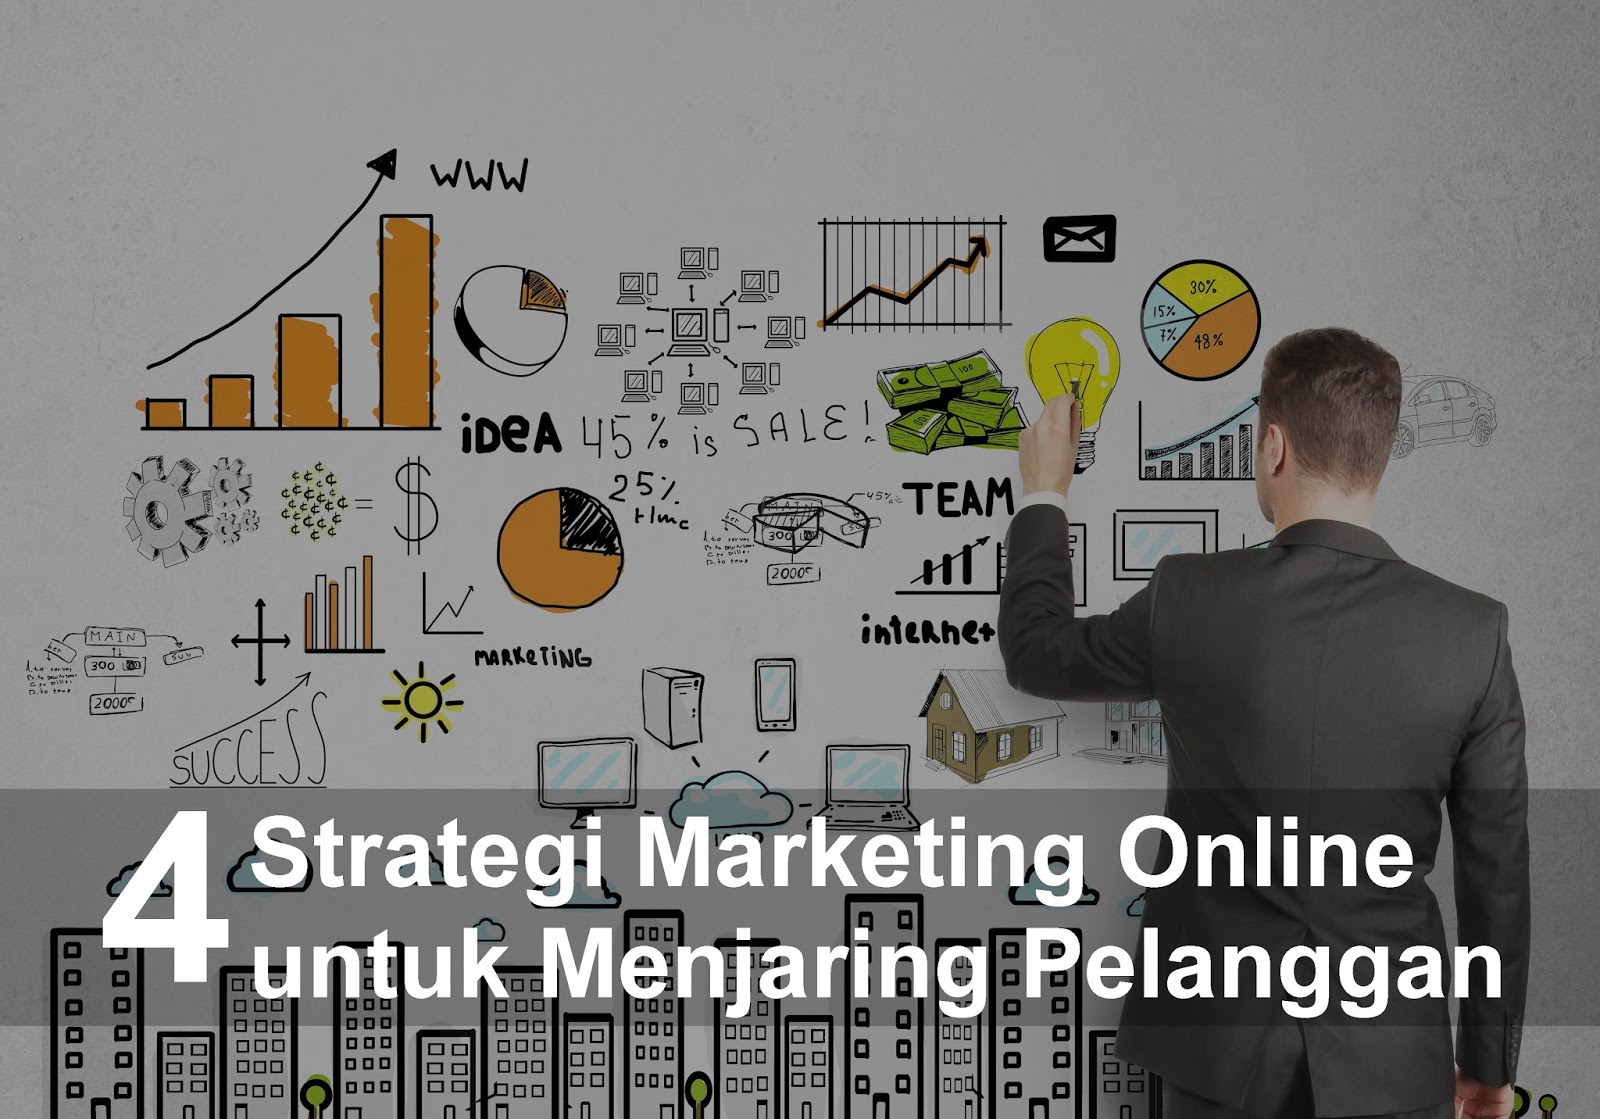 Strategi Terjitu Marketing untuk Toko Online